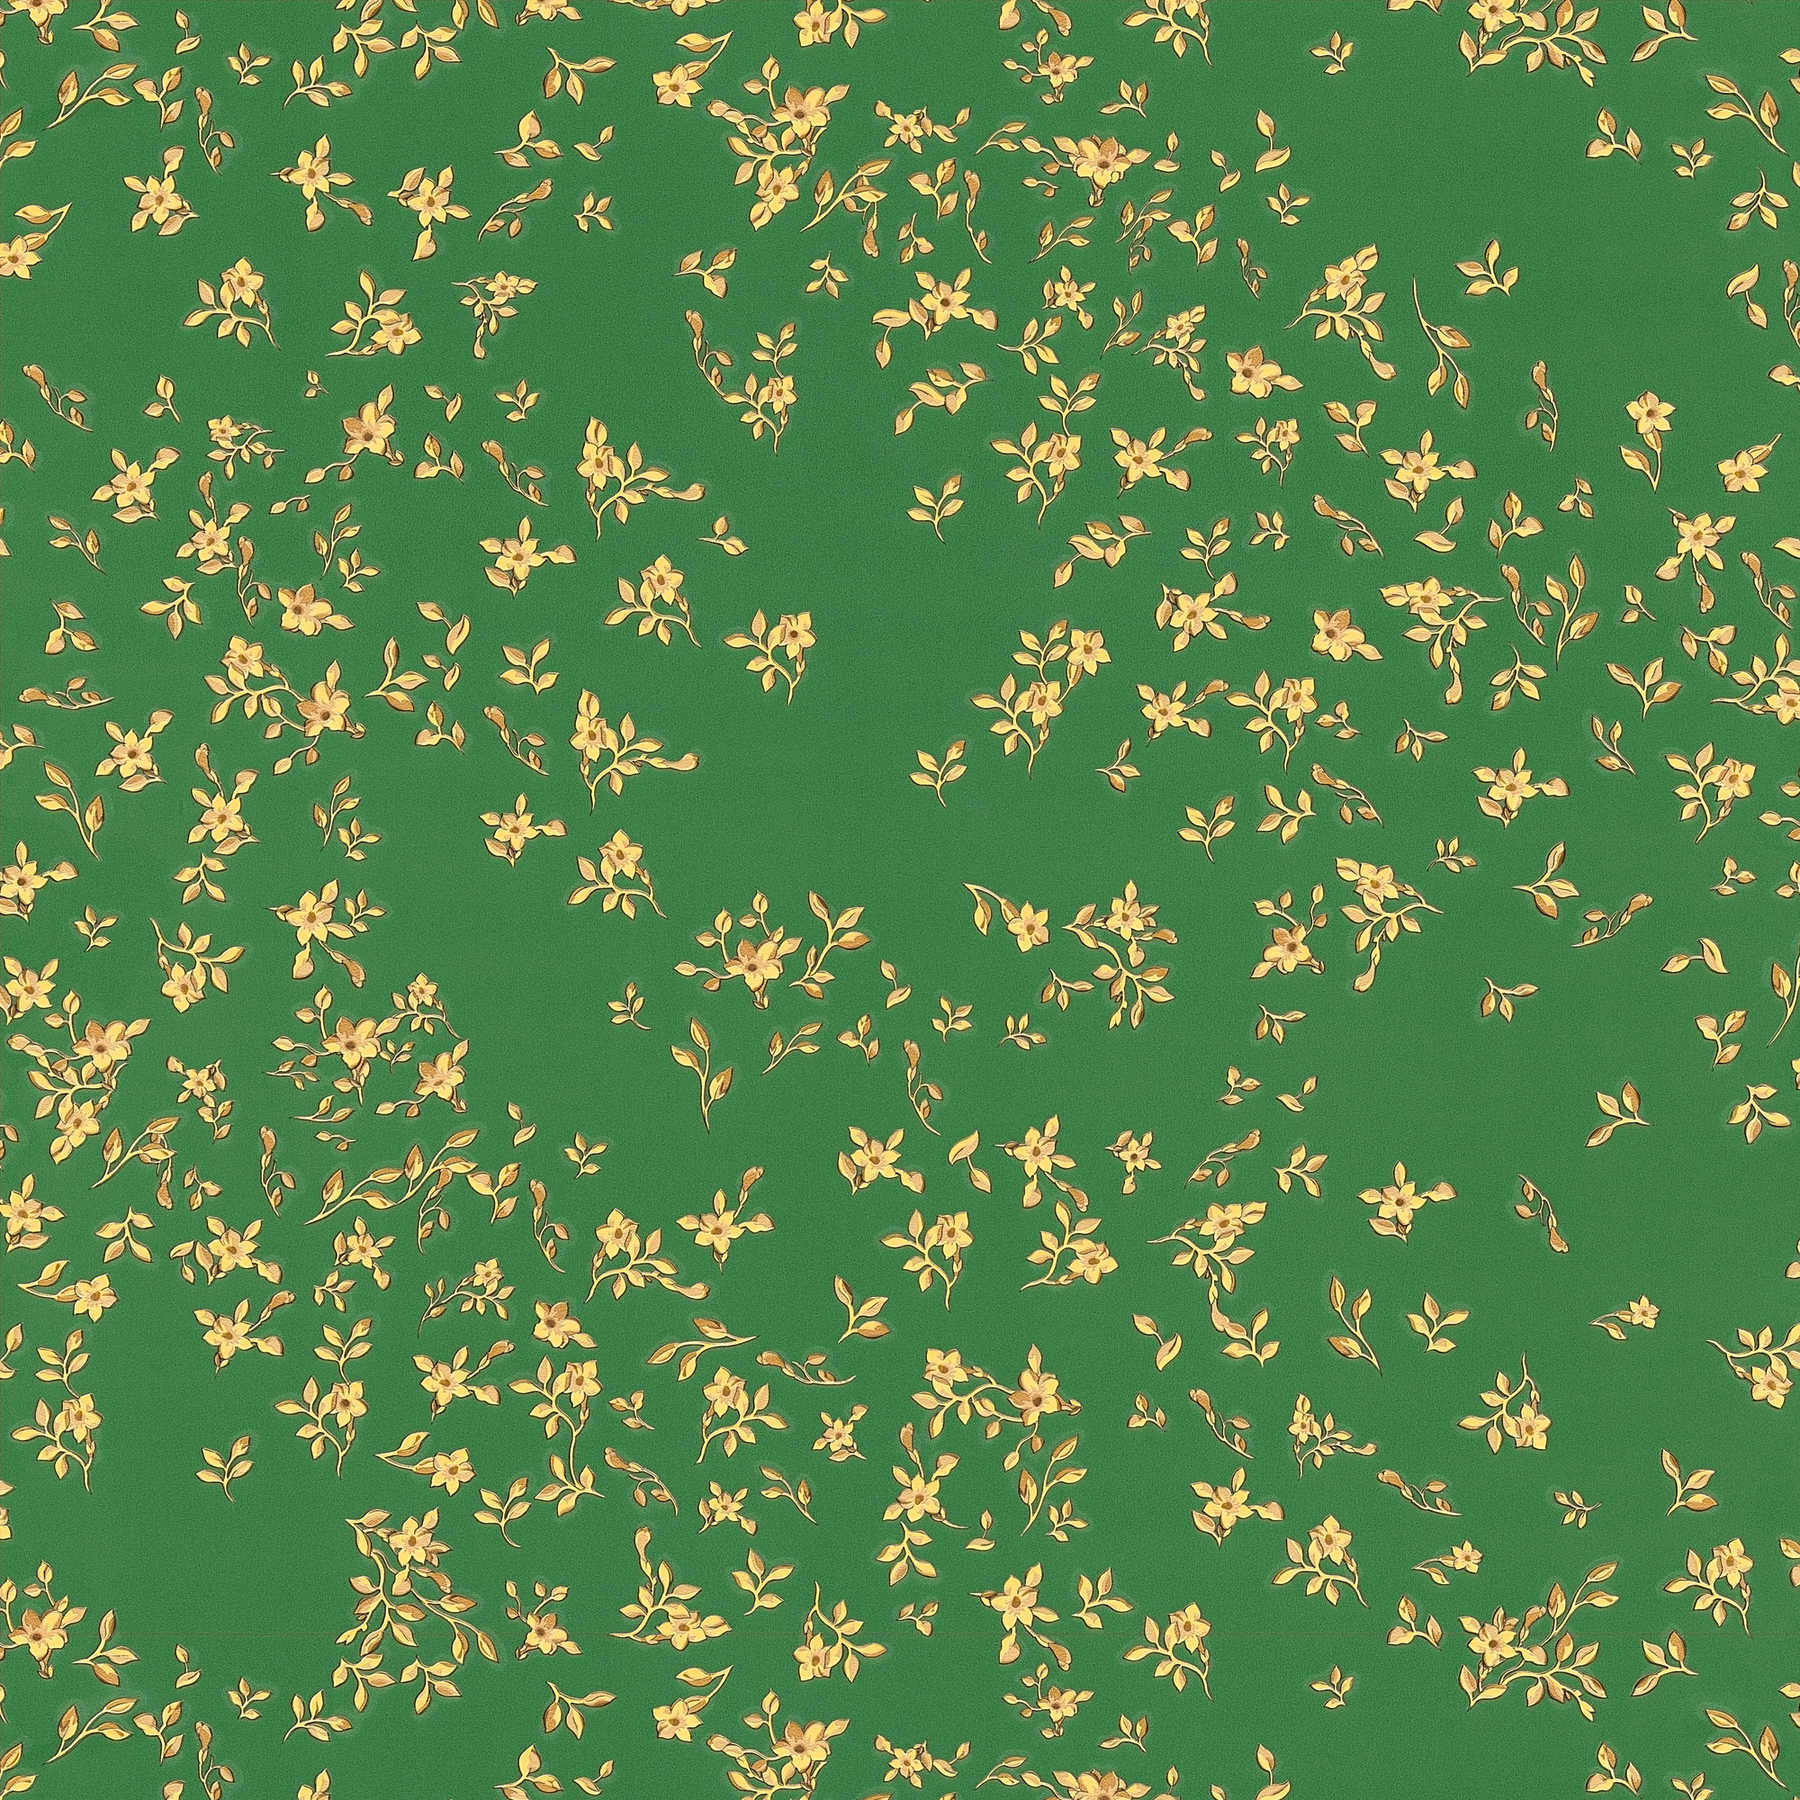 Papier peint vert VERSACE avec petites fleurs dorées - vert, or, jaune
